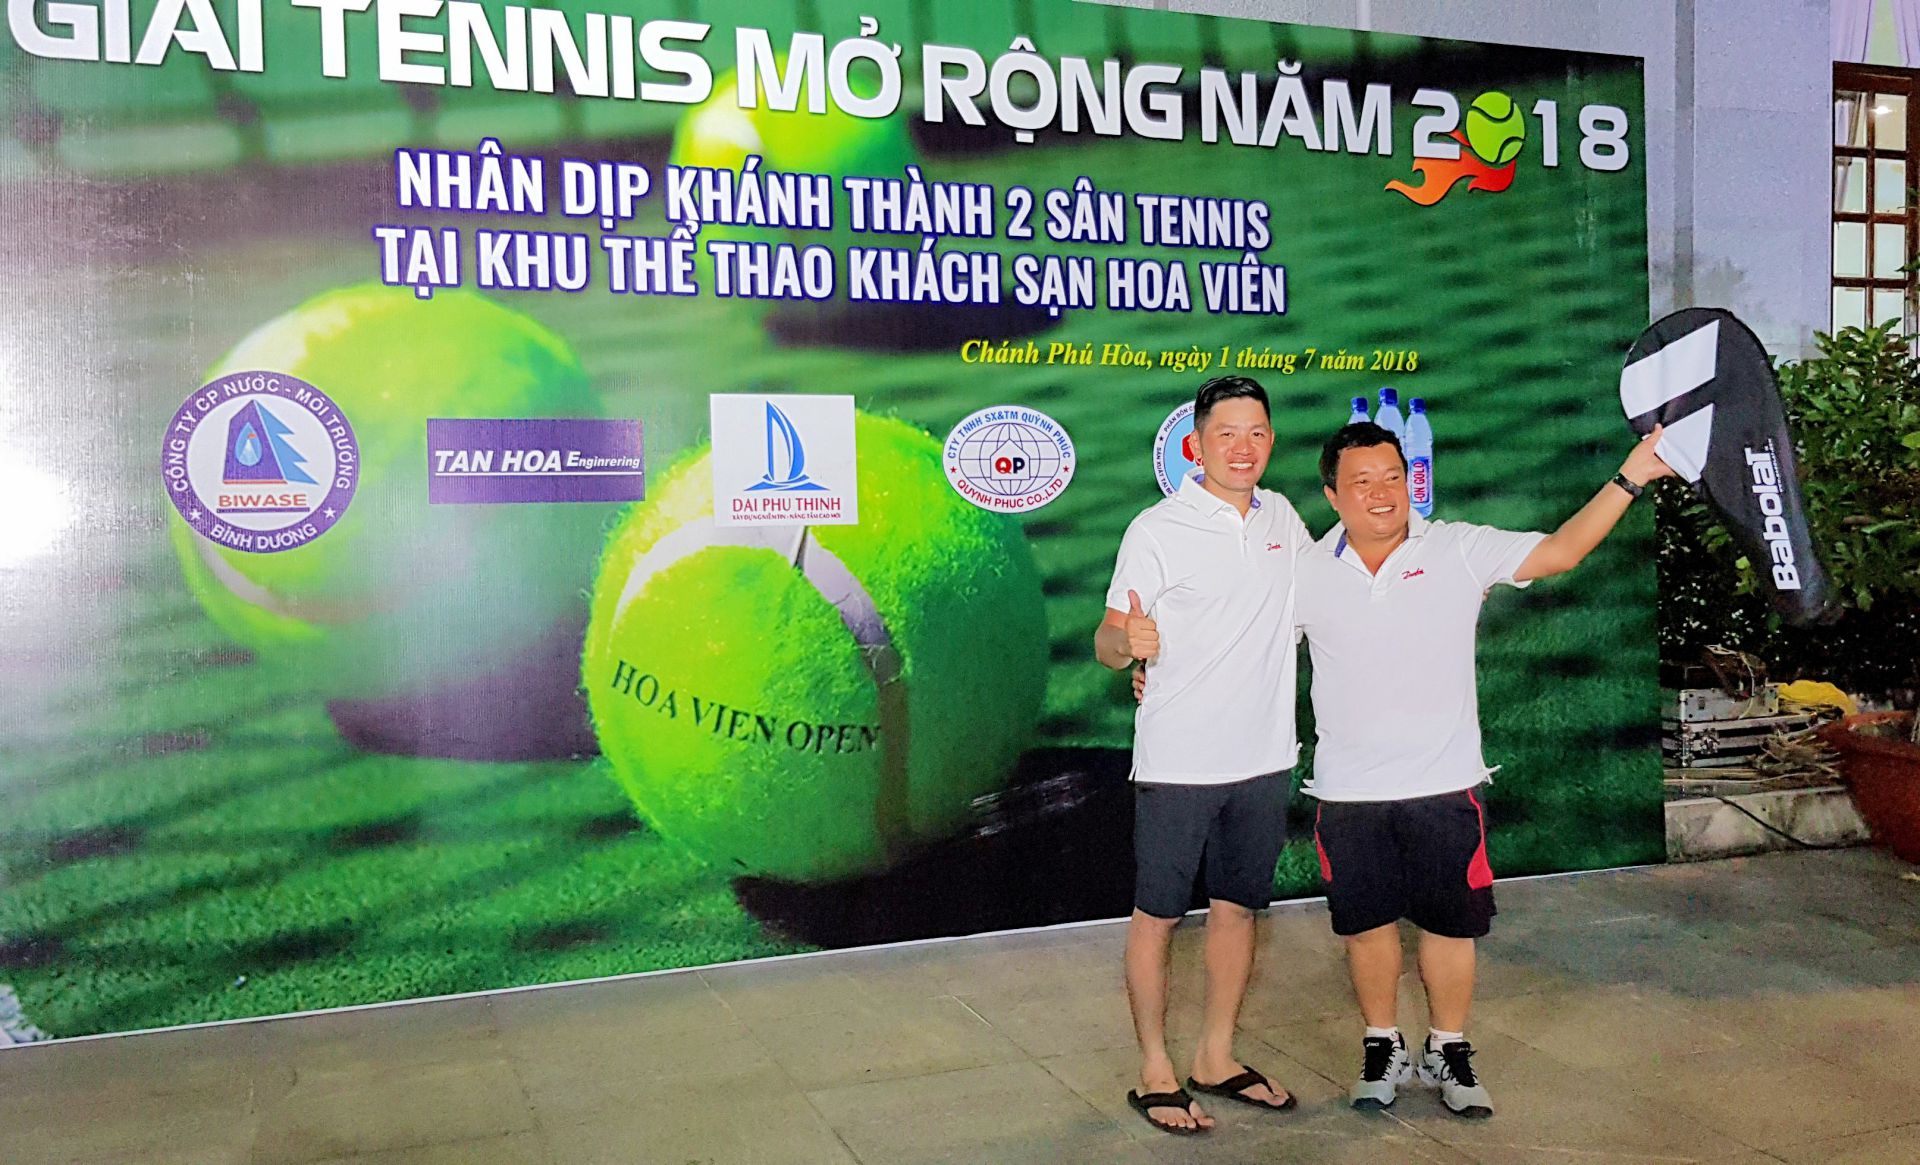 Tổng kết giải tennis Hoa Viên mở rộng 2018